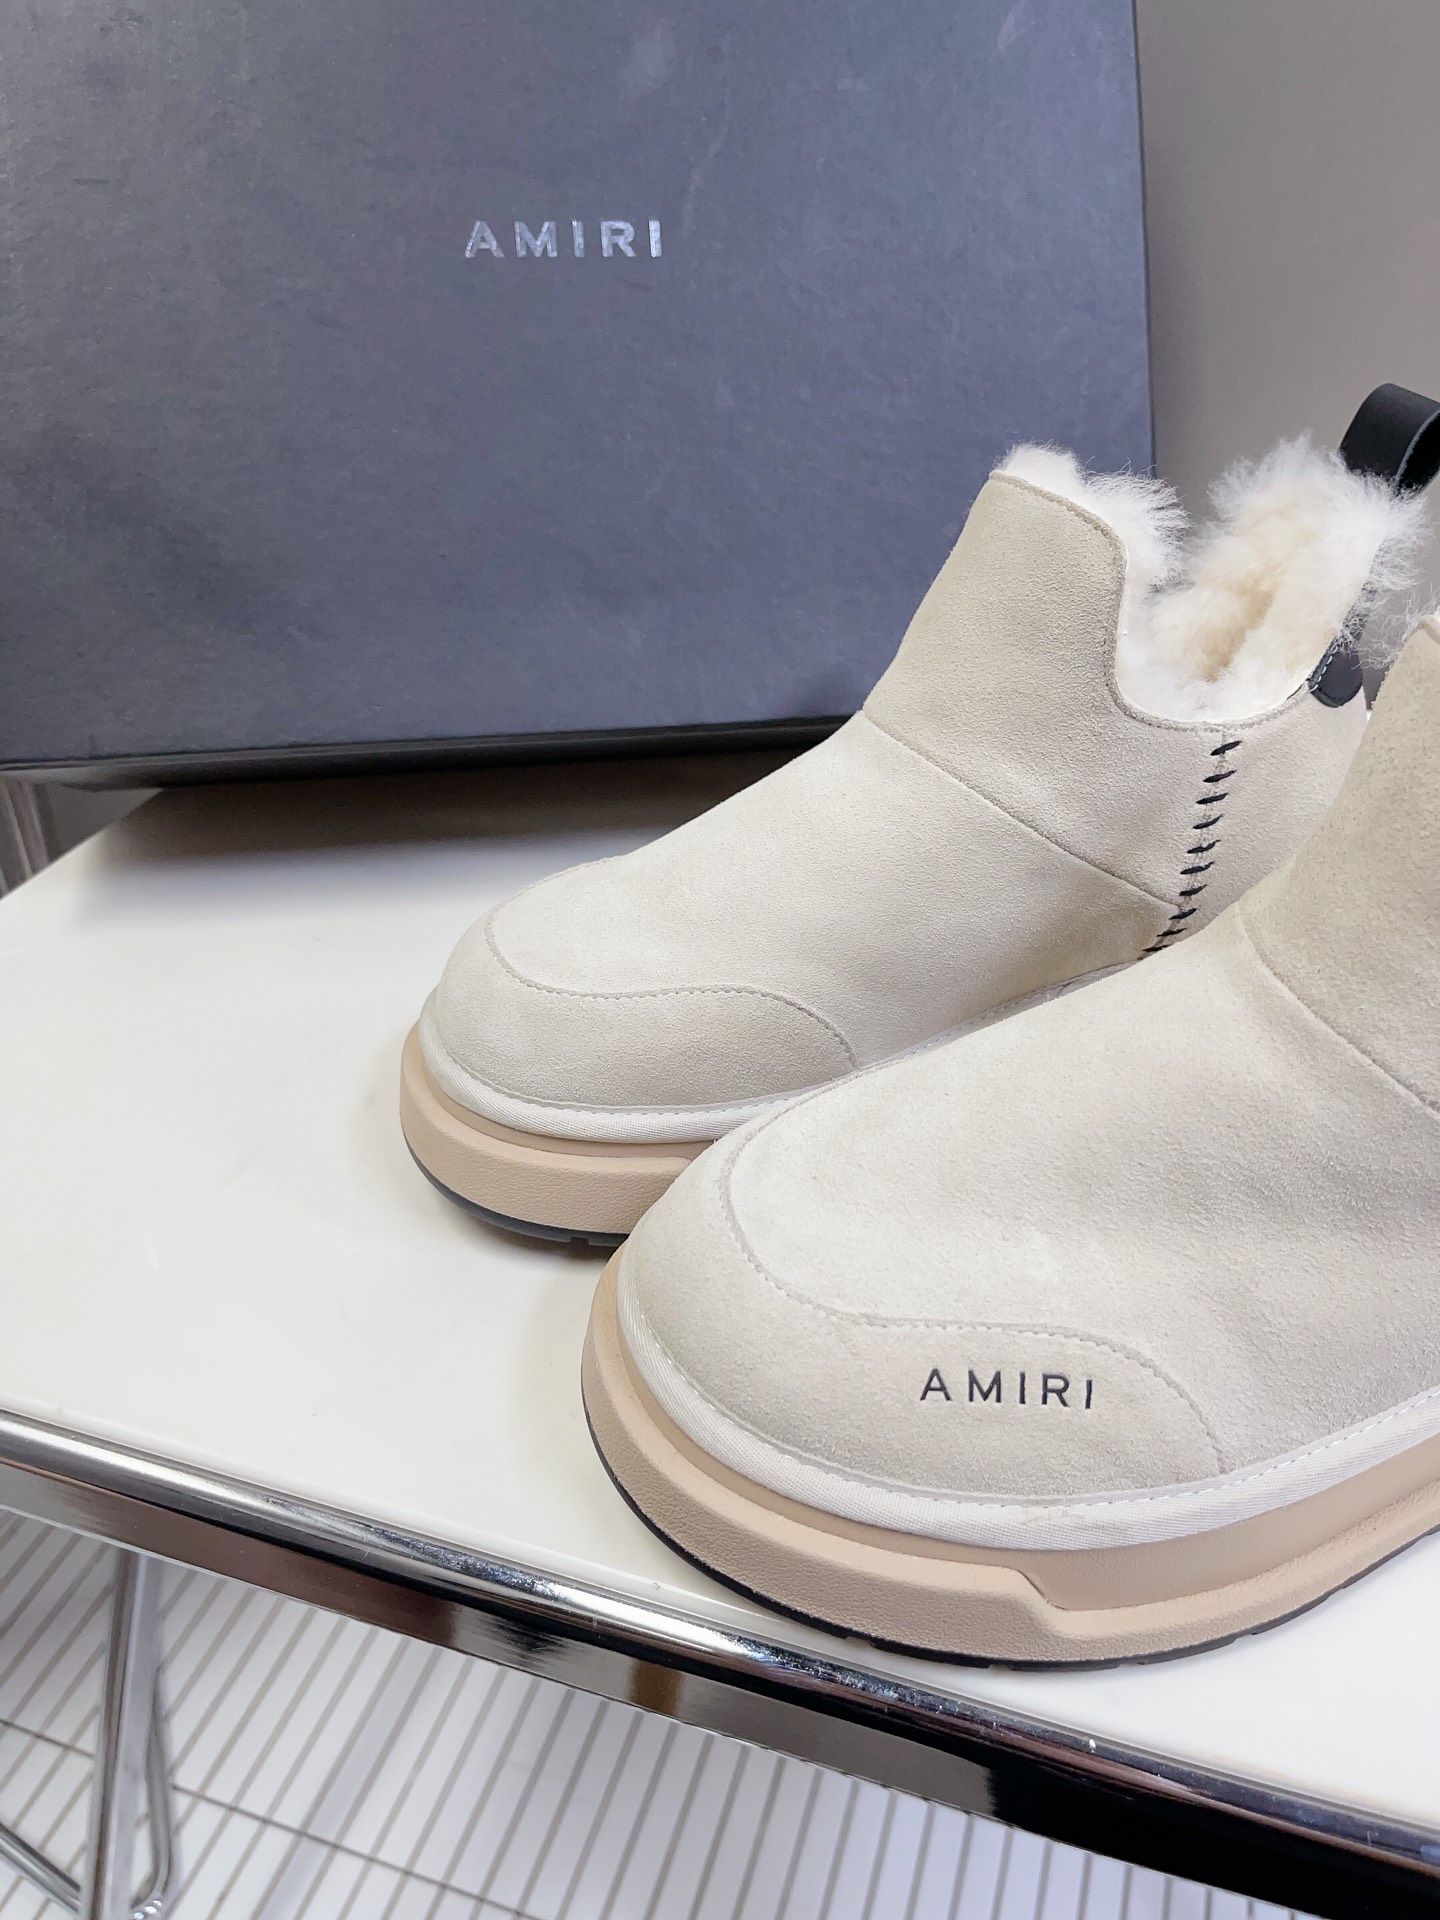 AMIRI新款毛毛鞋是来自美国的潮流品牌迅速走红国际时装界的一个年轻品牌所致力打造的风格毛鞋的保暖性结构